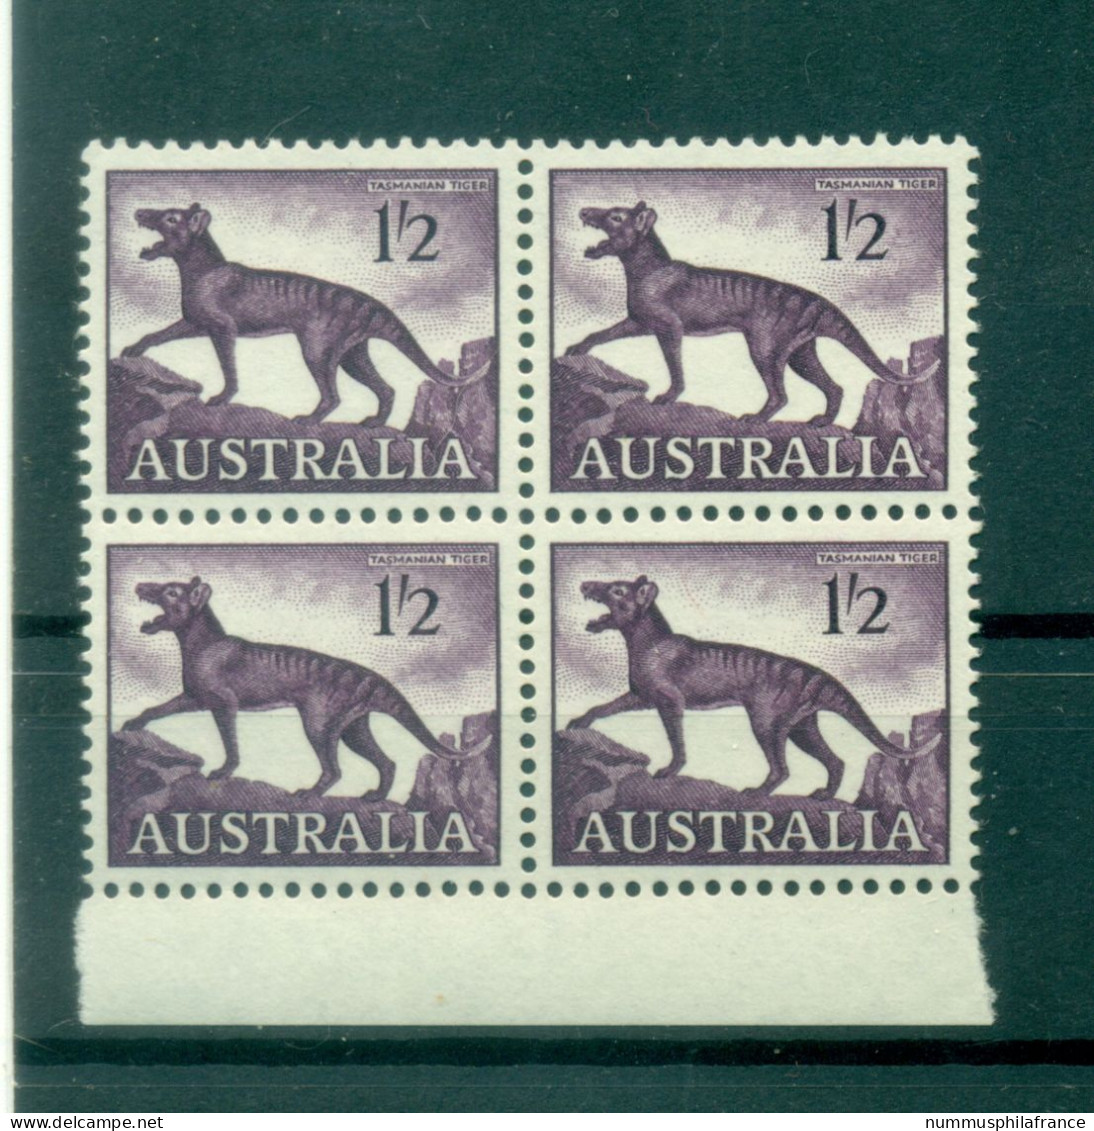 Australie 1959-62 - Y & T N. 255A - Série Courante (Michel N. 311 X) - Mint Stamps